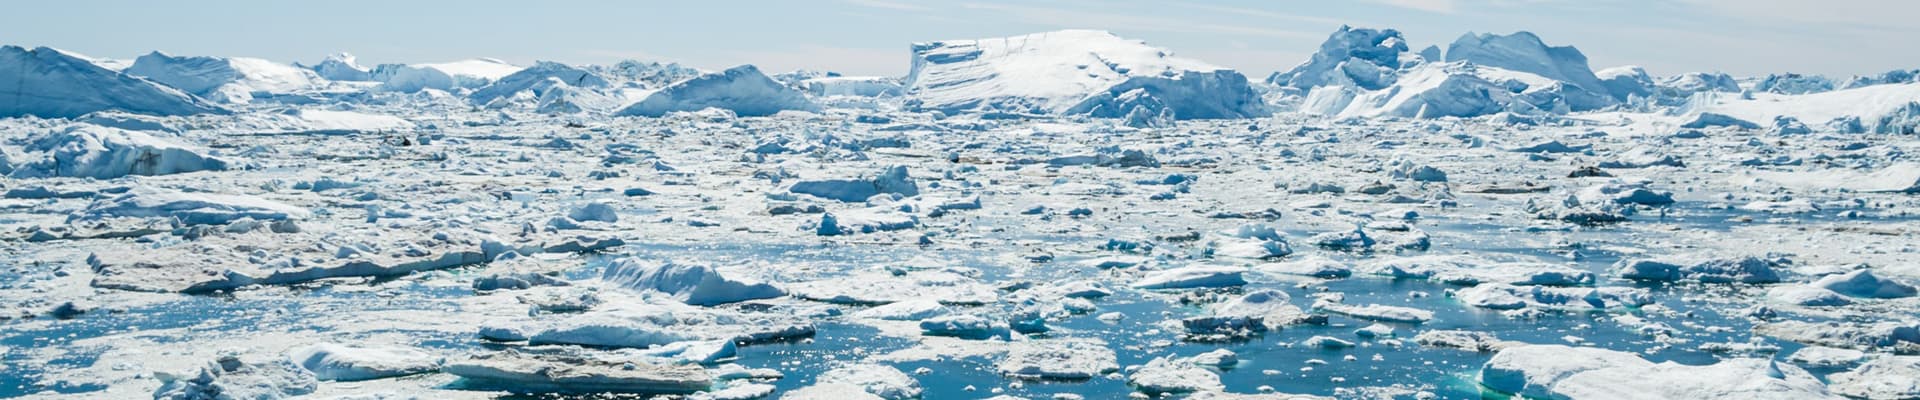 La riduzione delle calotte polari è un segnale forte dell’emergenza climatica